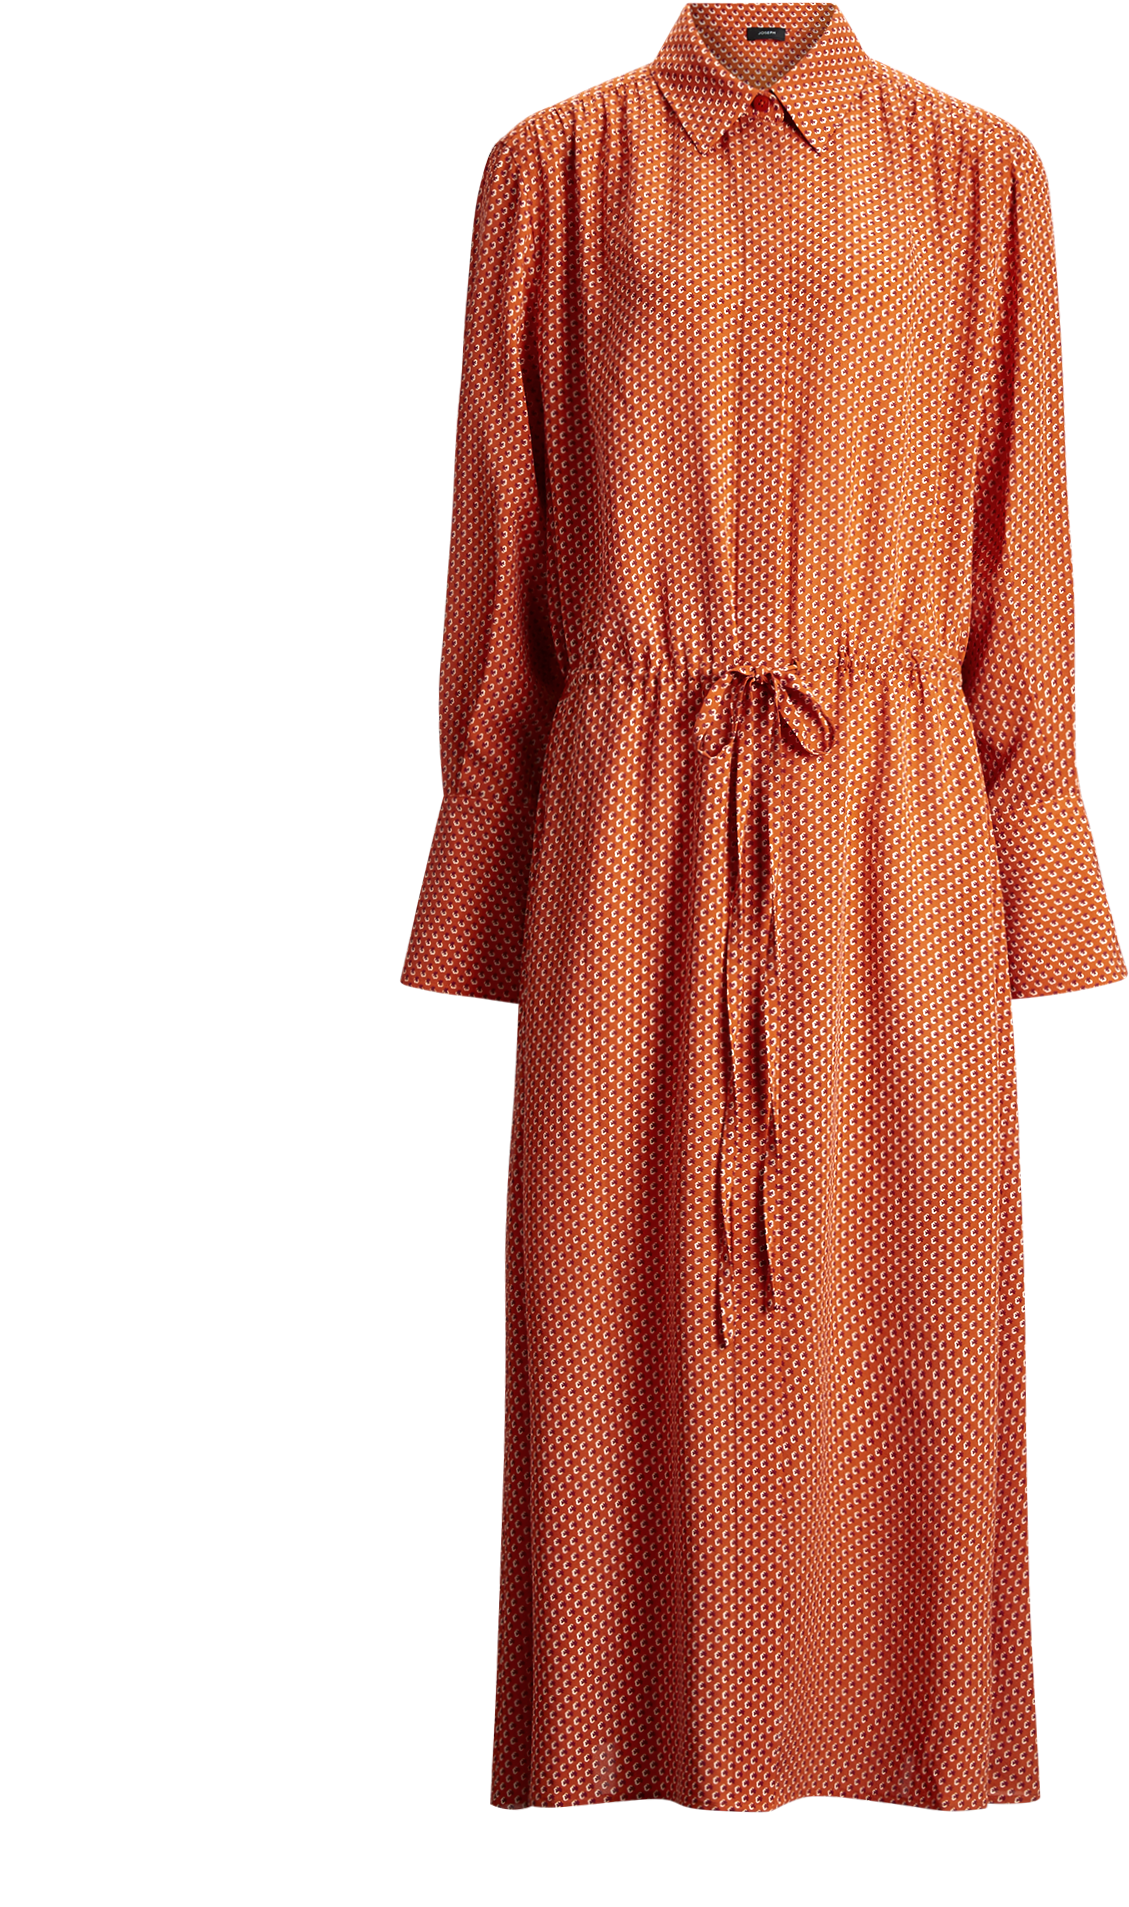 Orange Polka Dot Shirt Dress PNG